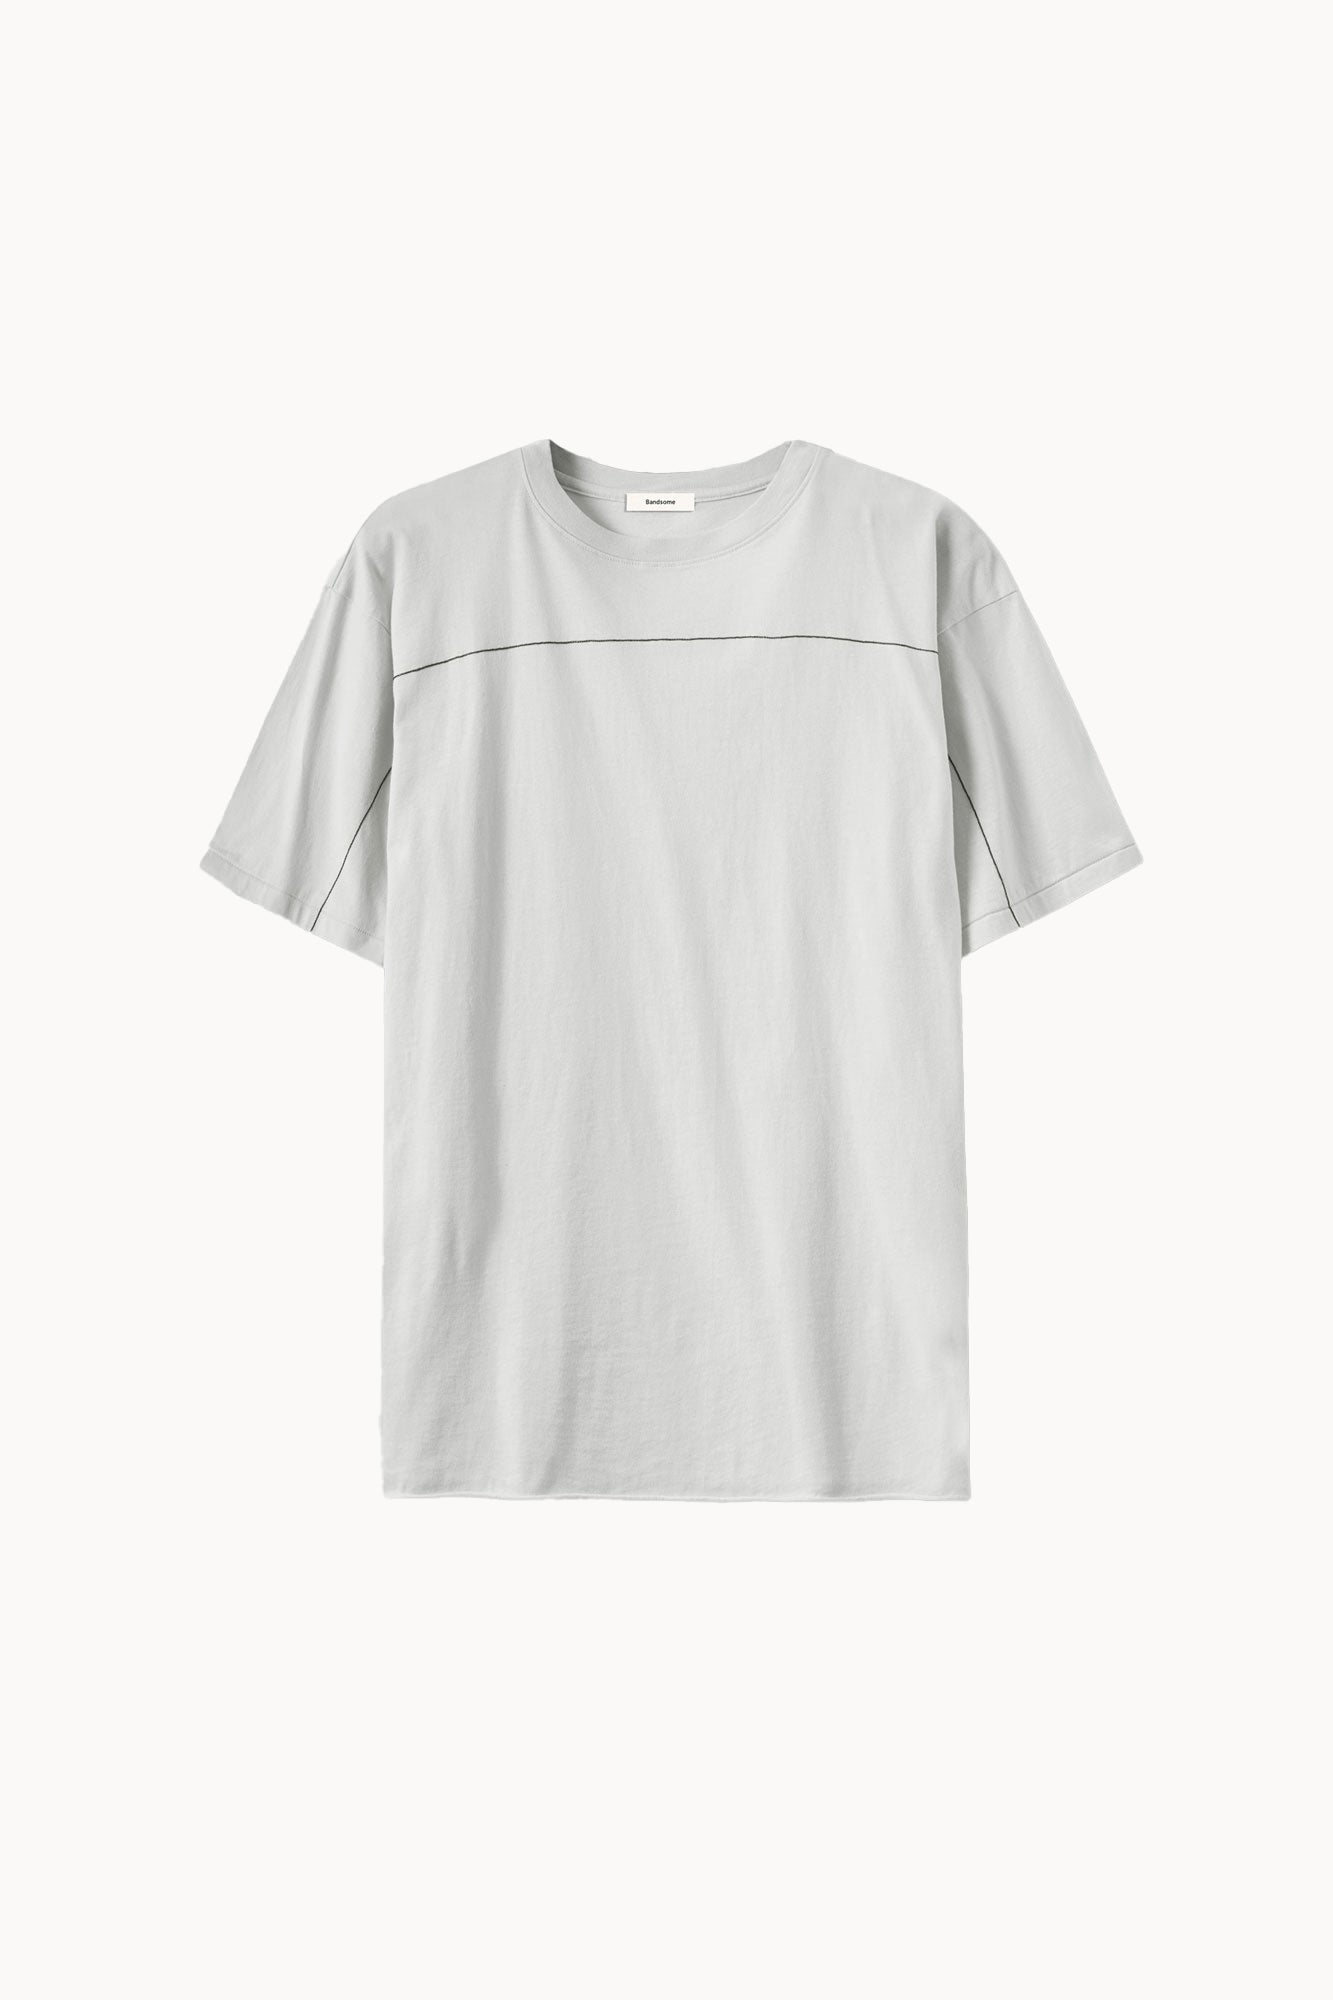 box t-shirt light grey stitch